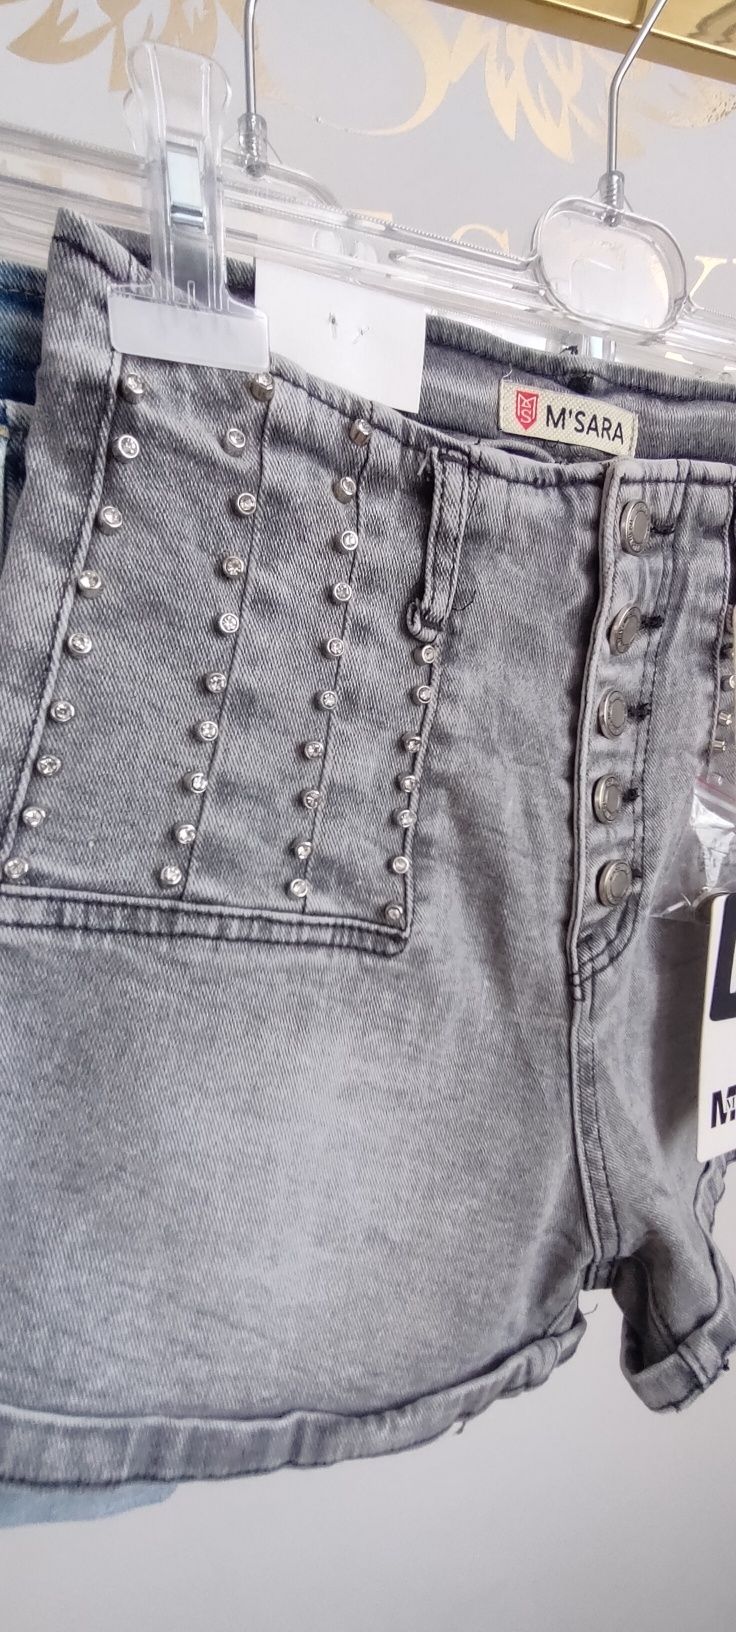 Szorty spodnie damskie jeansowe M Sara wysoki stan z dżetami szare L